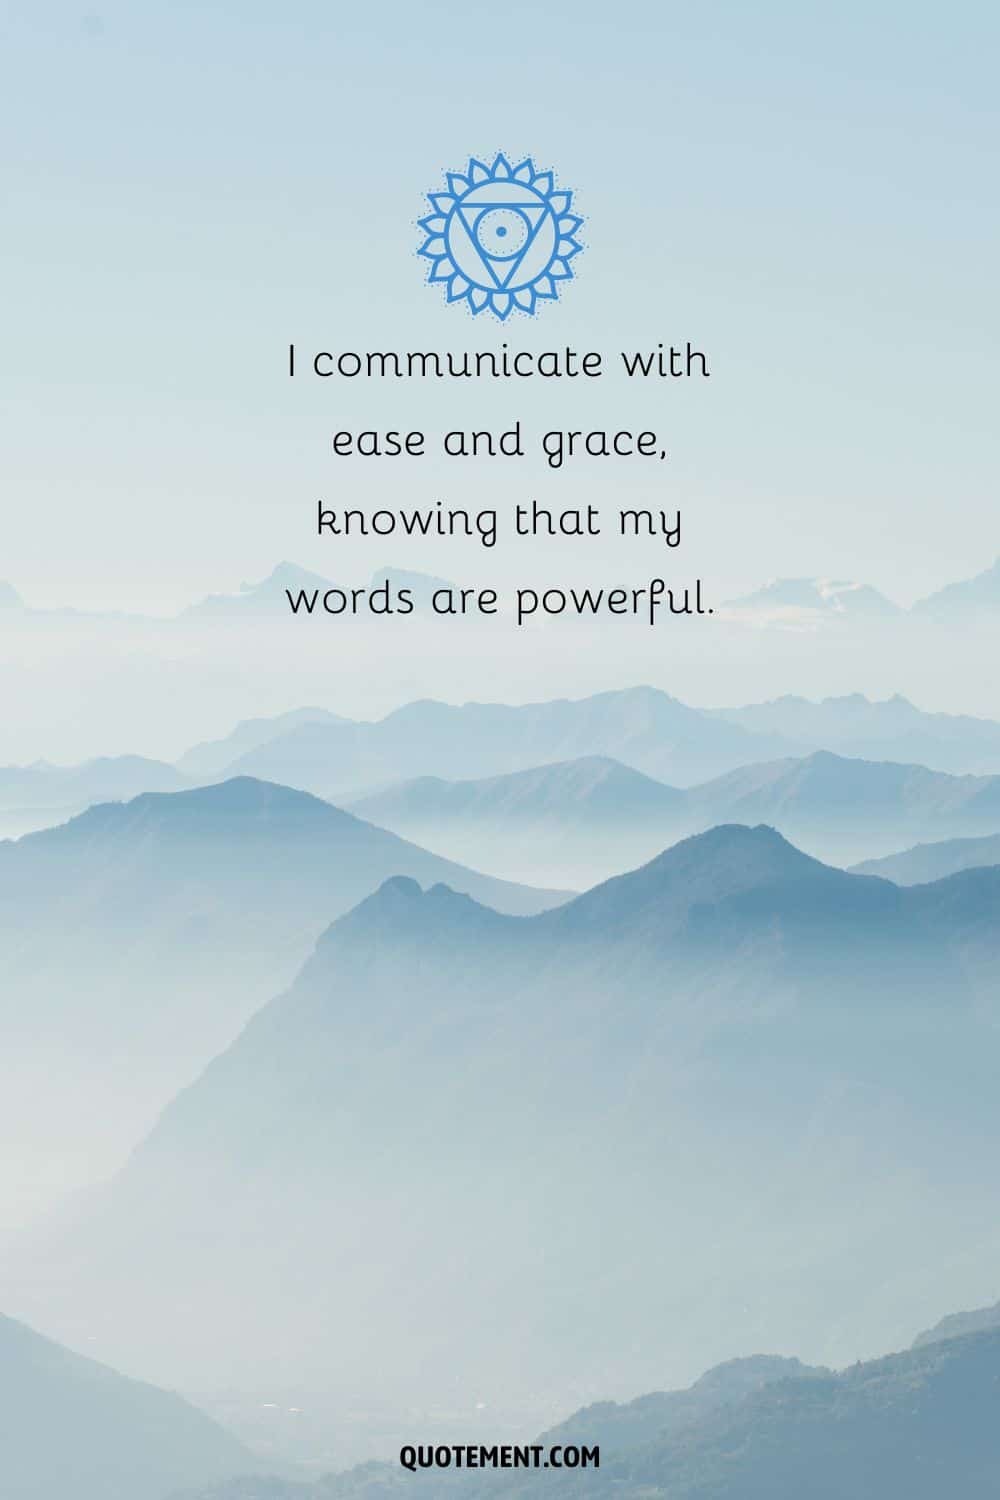 "Me comunico con facilidad y gracia, sabiendo que mis palabras son poderosas".